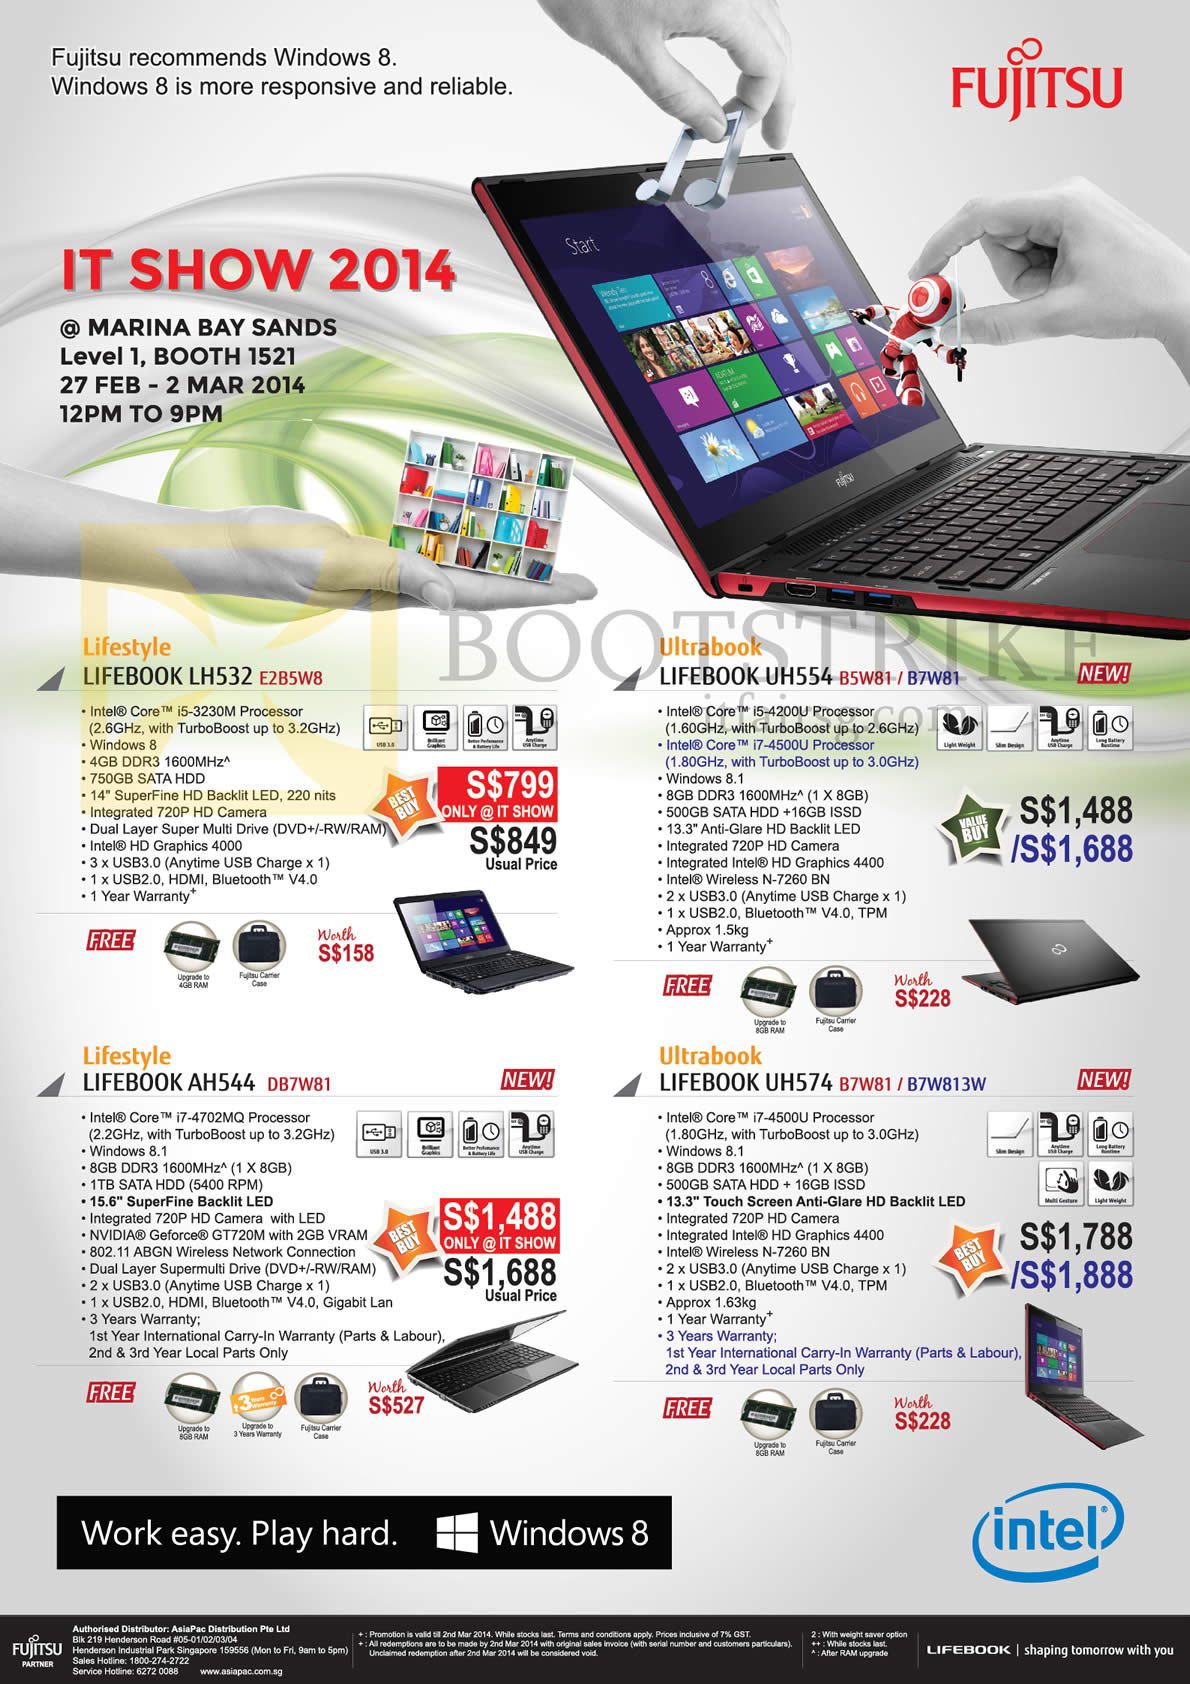 IT SHOW 2014 price list image brochure of Fujitsu Notebooks Lifebook LH532 E2B5W8, UH554 B5W81 B7W81, AH544 DB7W81, UH574 B7W81 B7W813W